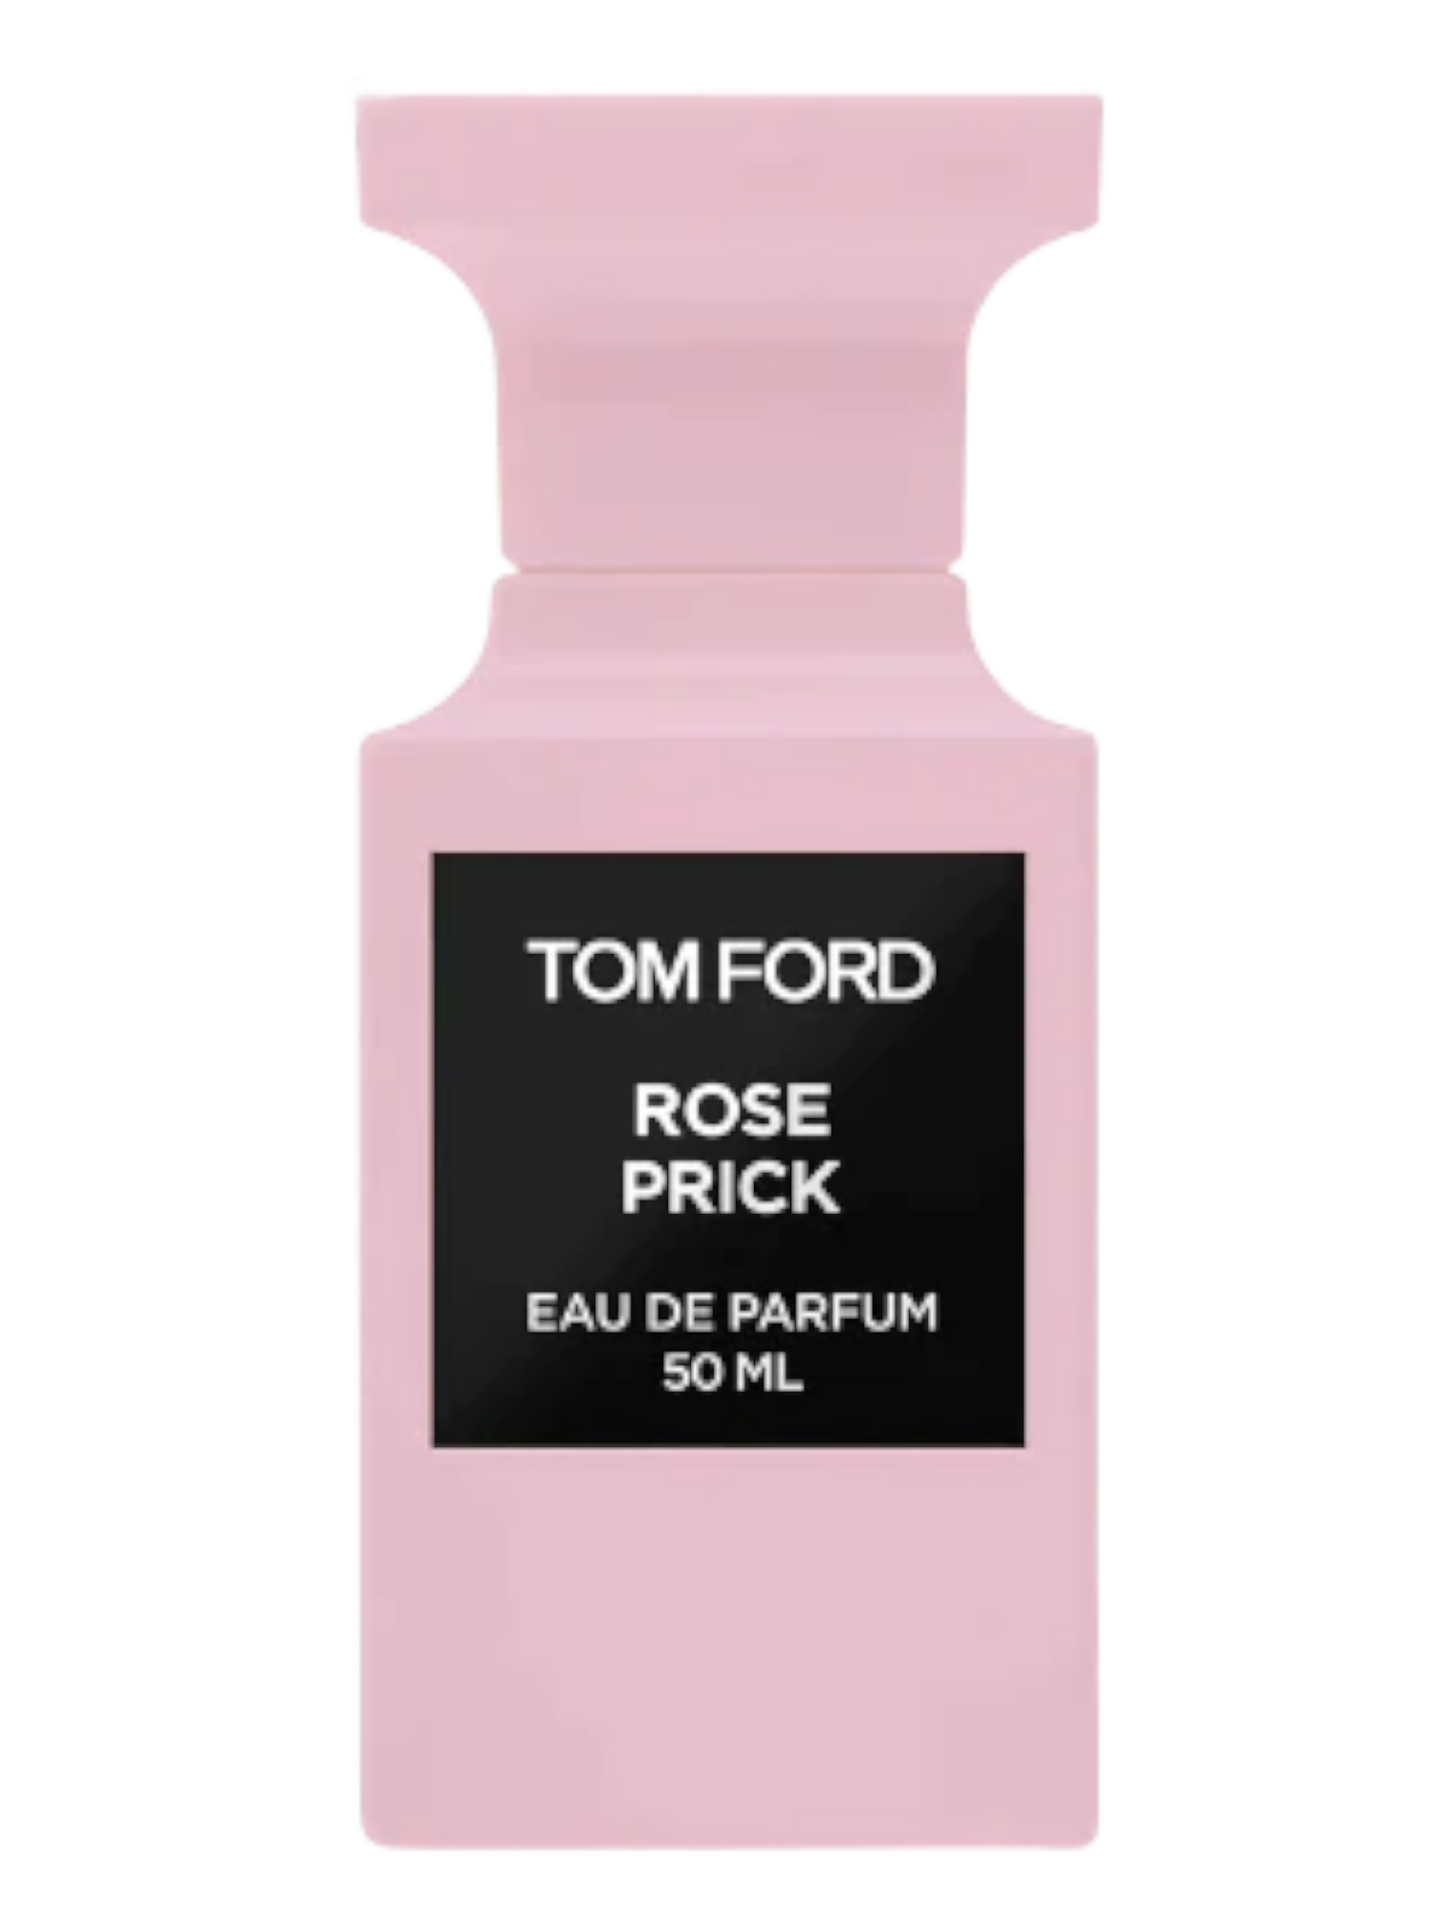 Tom Ford Rose Prick Eau De Parfum 1.7oz / 50ml Brand New